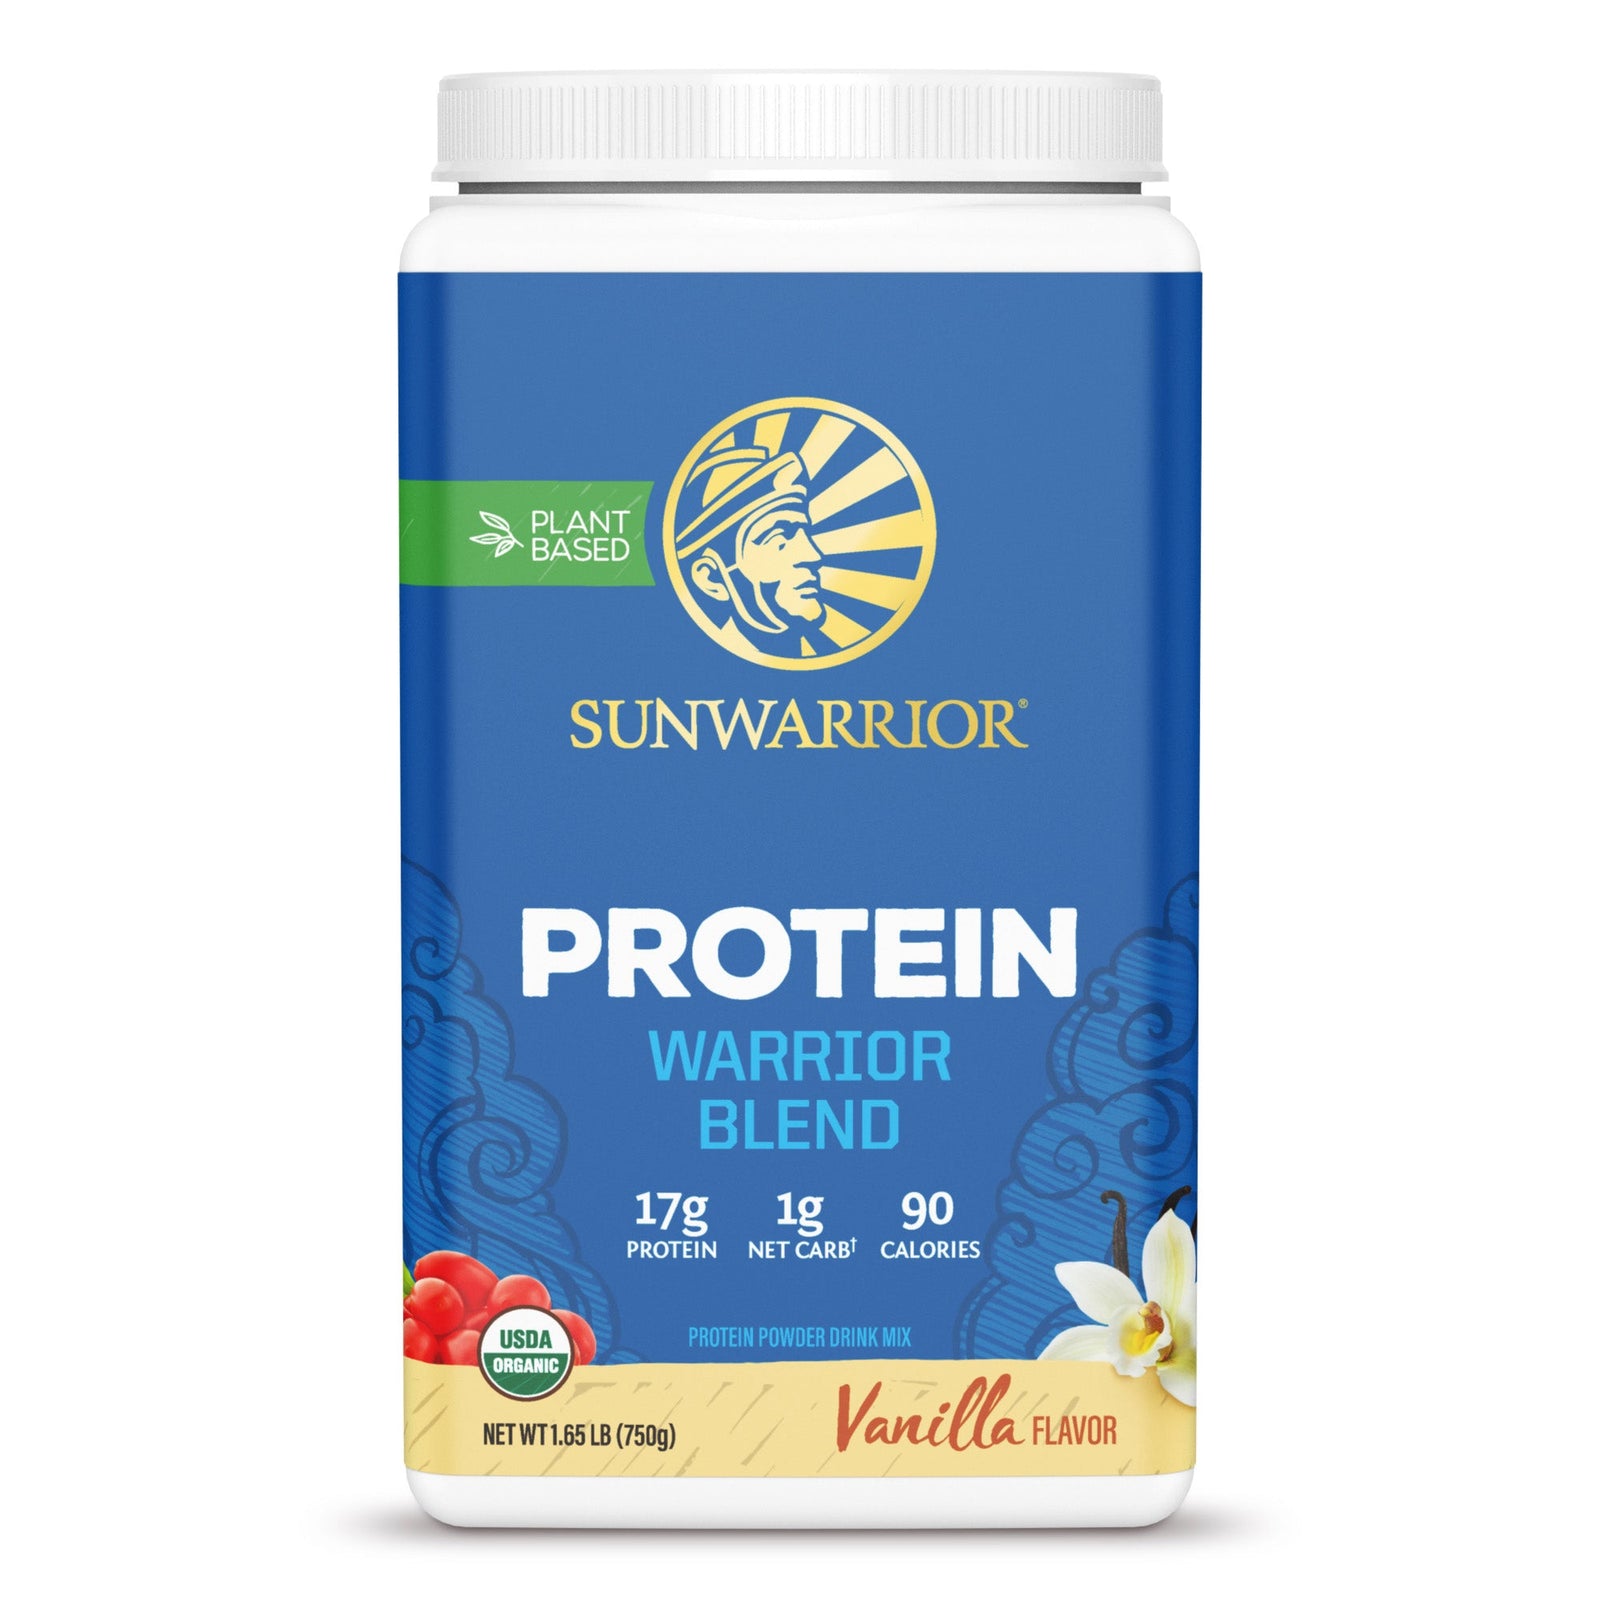 Warrior Protein Powder Shaker Pre Workout Stainless Steel Bottle